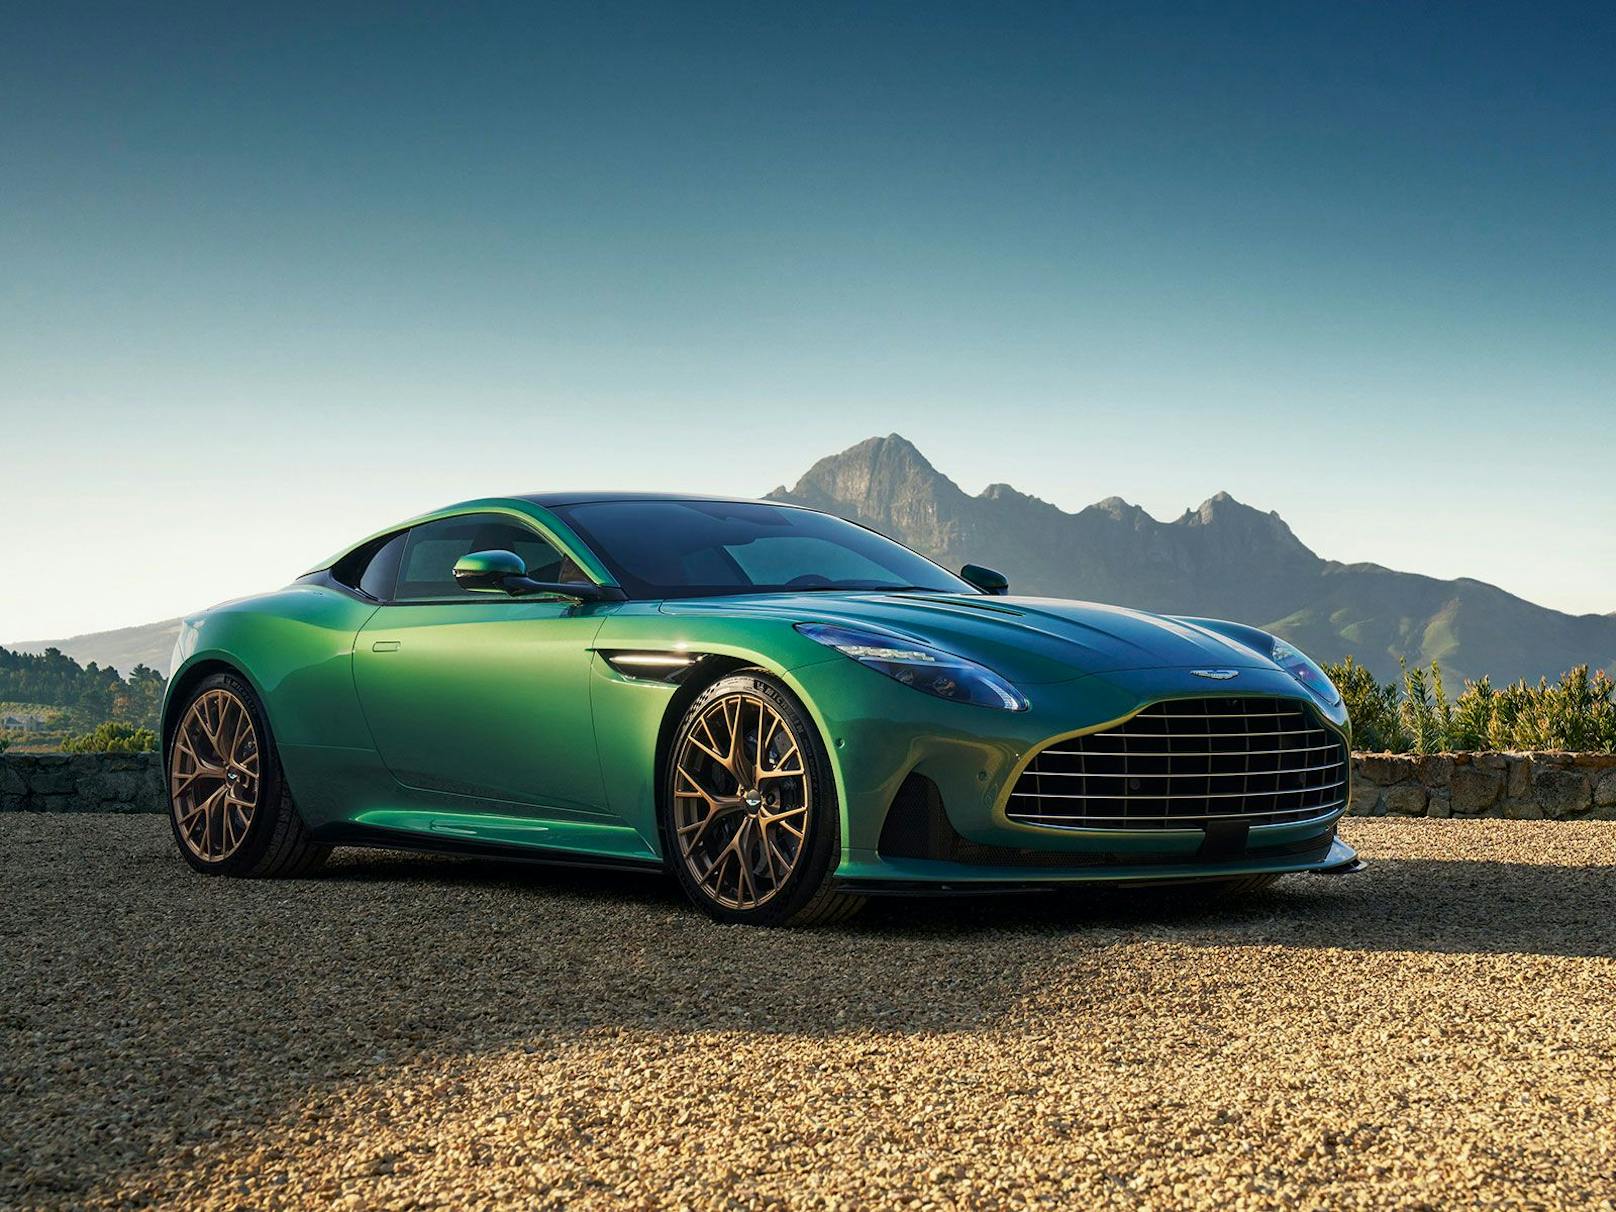 Der neue Aston Martin DB12 zeigt sich im gewohnten Aston Martin-Look.